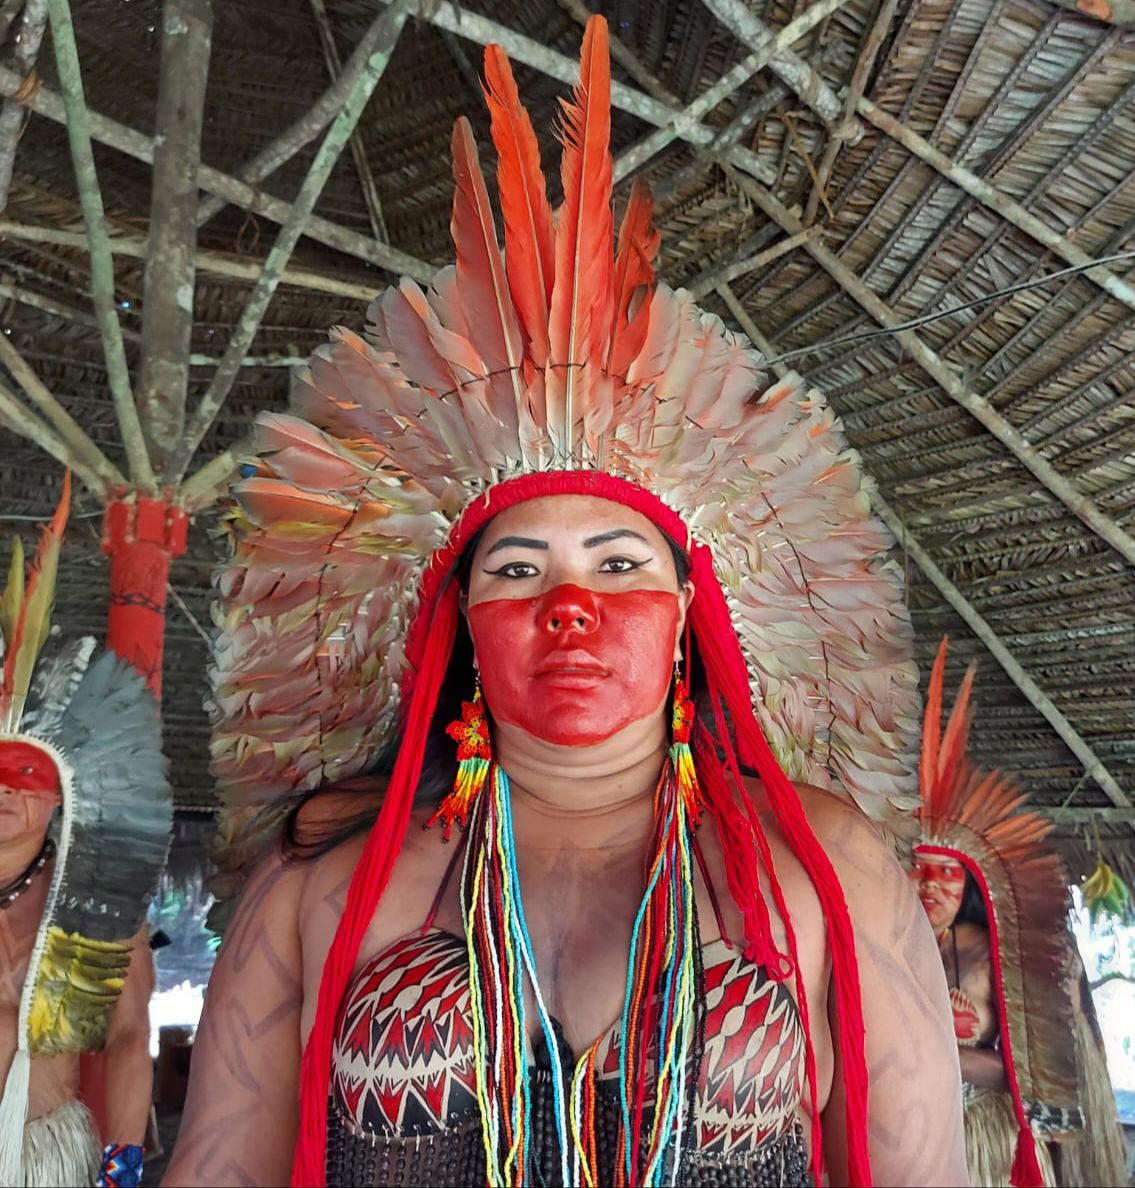 Turismo sustentável transforma vidas em comunidades tradicionais brasileiras